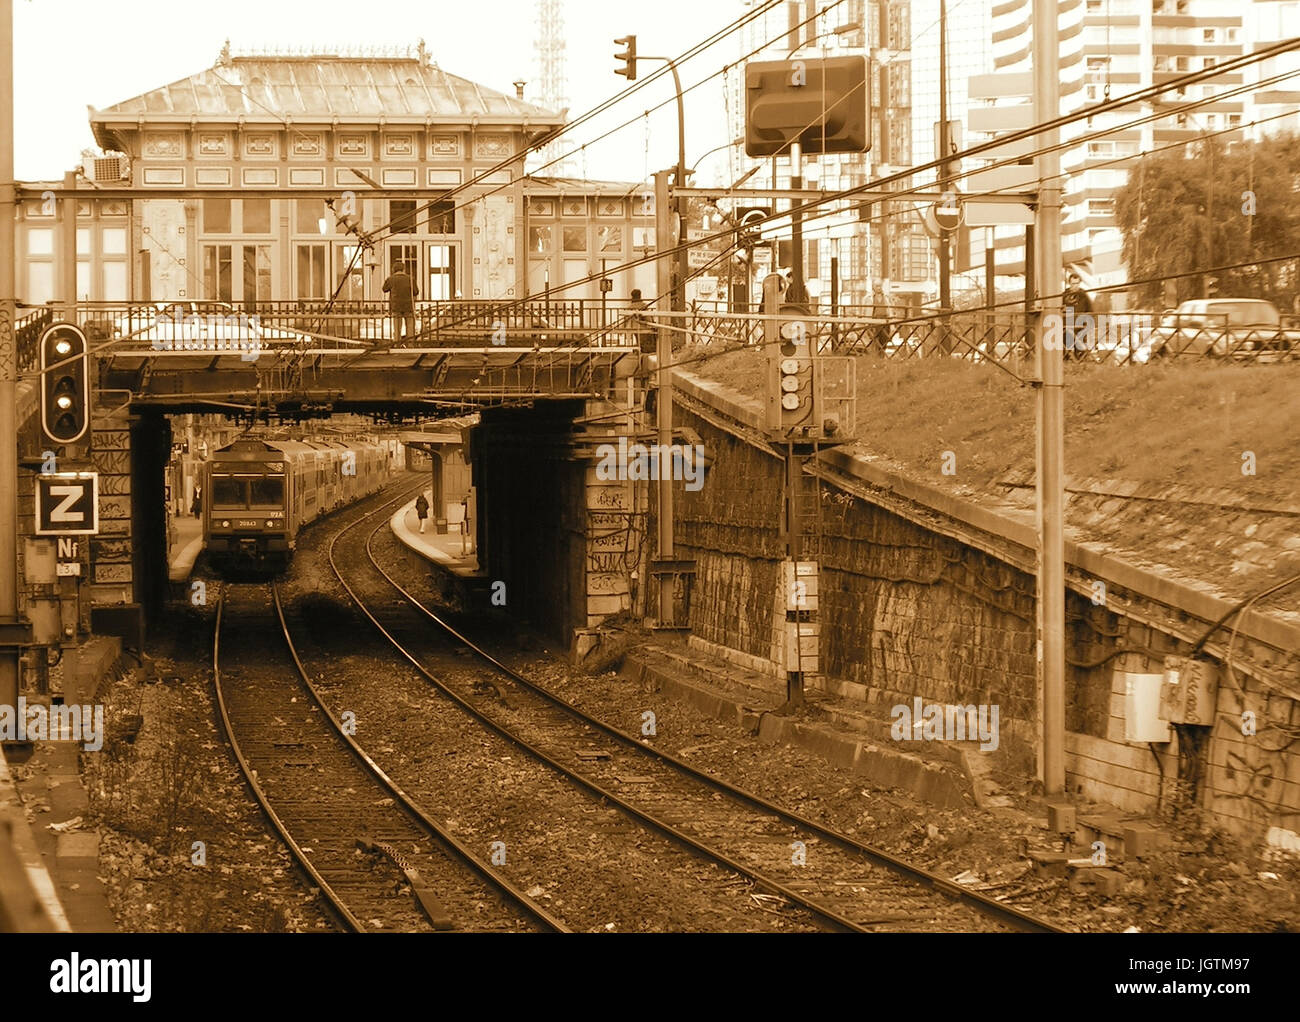 Javel, Gare RER, 15° arrondissement, Ile-de-France, Paris, France Stock Photo